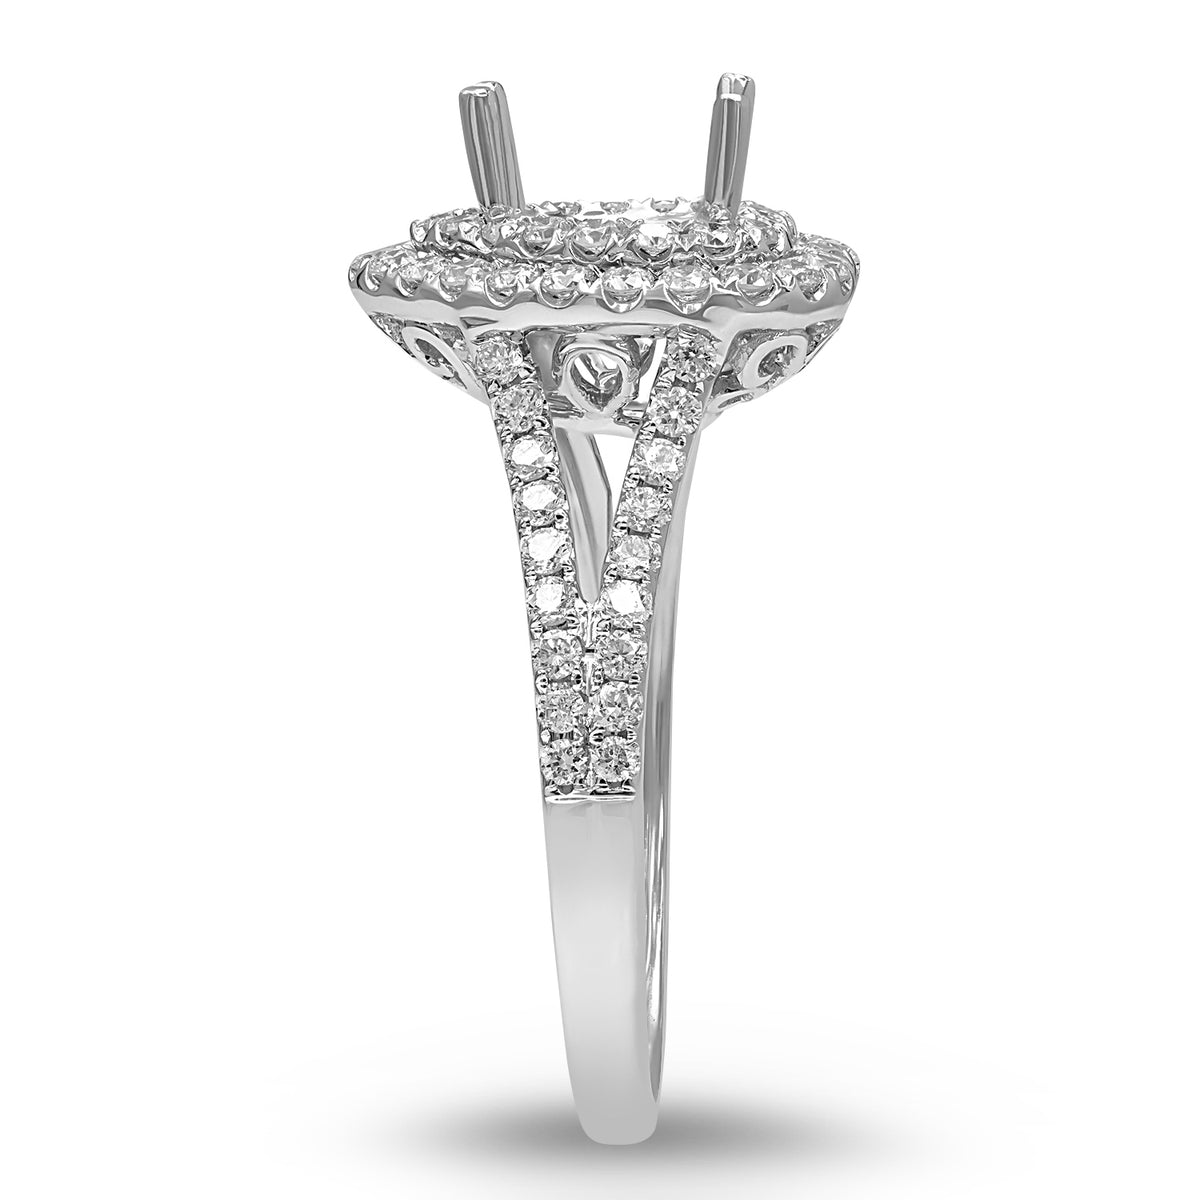 Double Heart Halo Diamond Semi-mount Ring